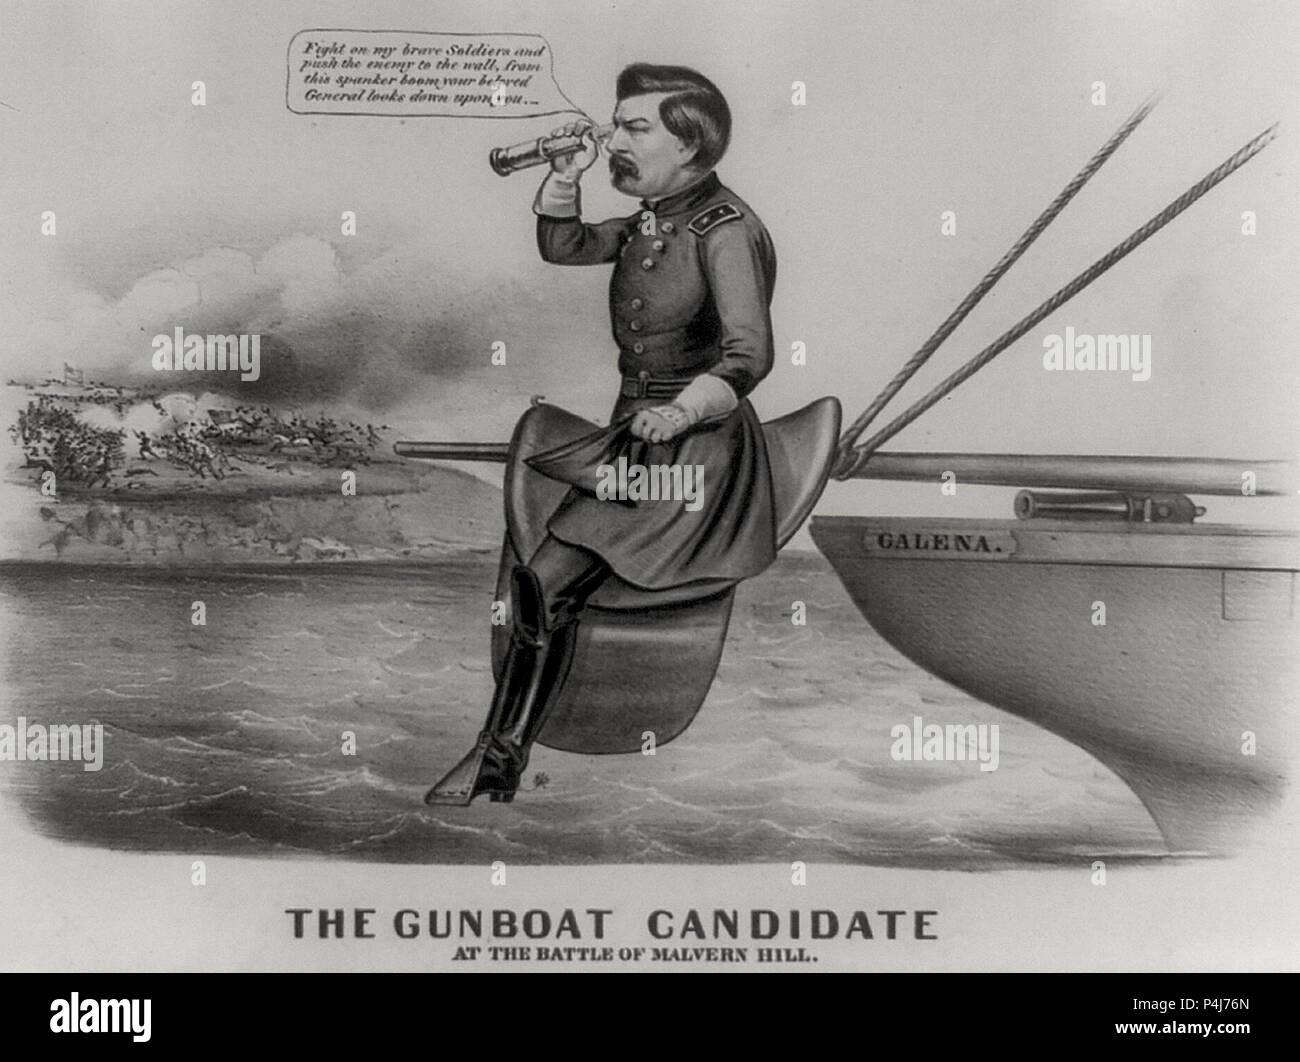 Das kanonenboot Kandidat bei der Schlacht am Malvern Hill - Demokratische Präsidentschaftskandidat George Brinton McClellan ist verspottet als inkompetent militärischer Führer. Er sitzt in einen Sattel auf den Boom der Union gepanzerte Schiff "Galena montiert.' 1864 Präsidentschaftswahlkampf Stockfoto